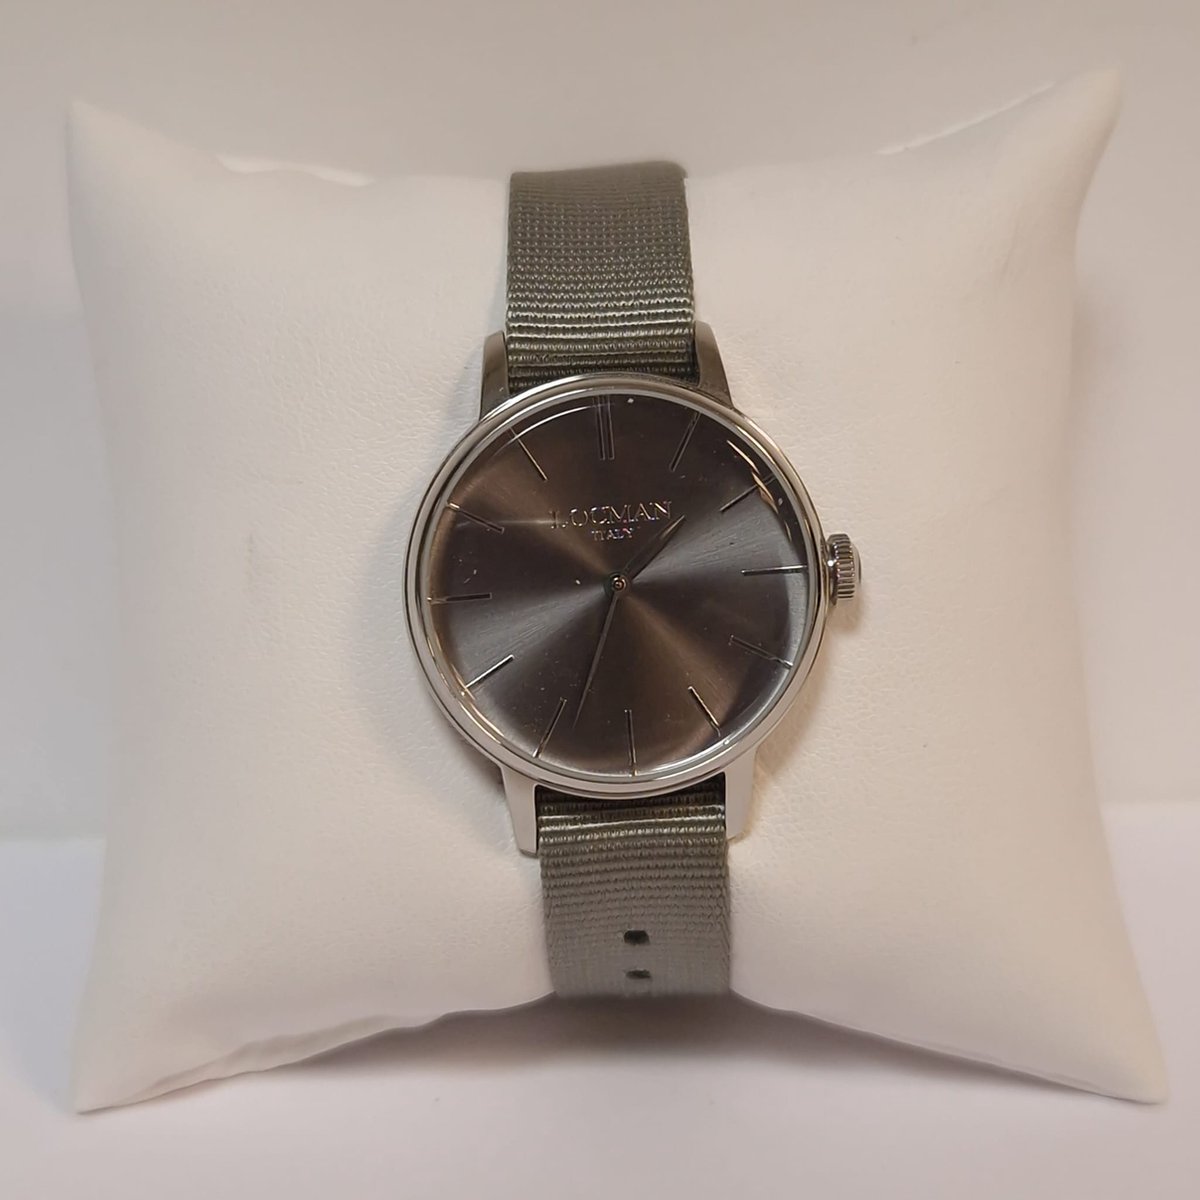 Locman - vrouwen horloge - 1960 - 0253A07A-00GYNKNI - uitverkoop Juwelier Verlinden St. Hubert – van €189,= voor €159,=